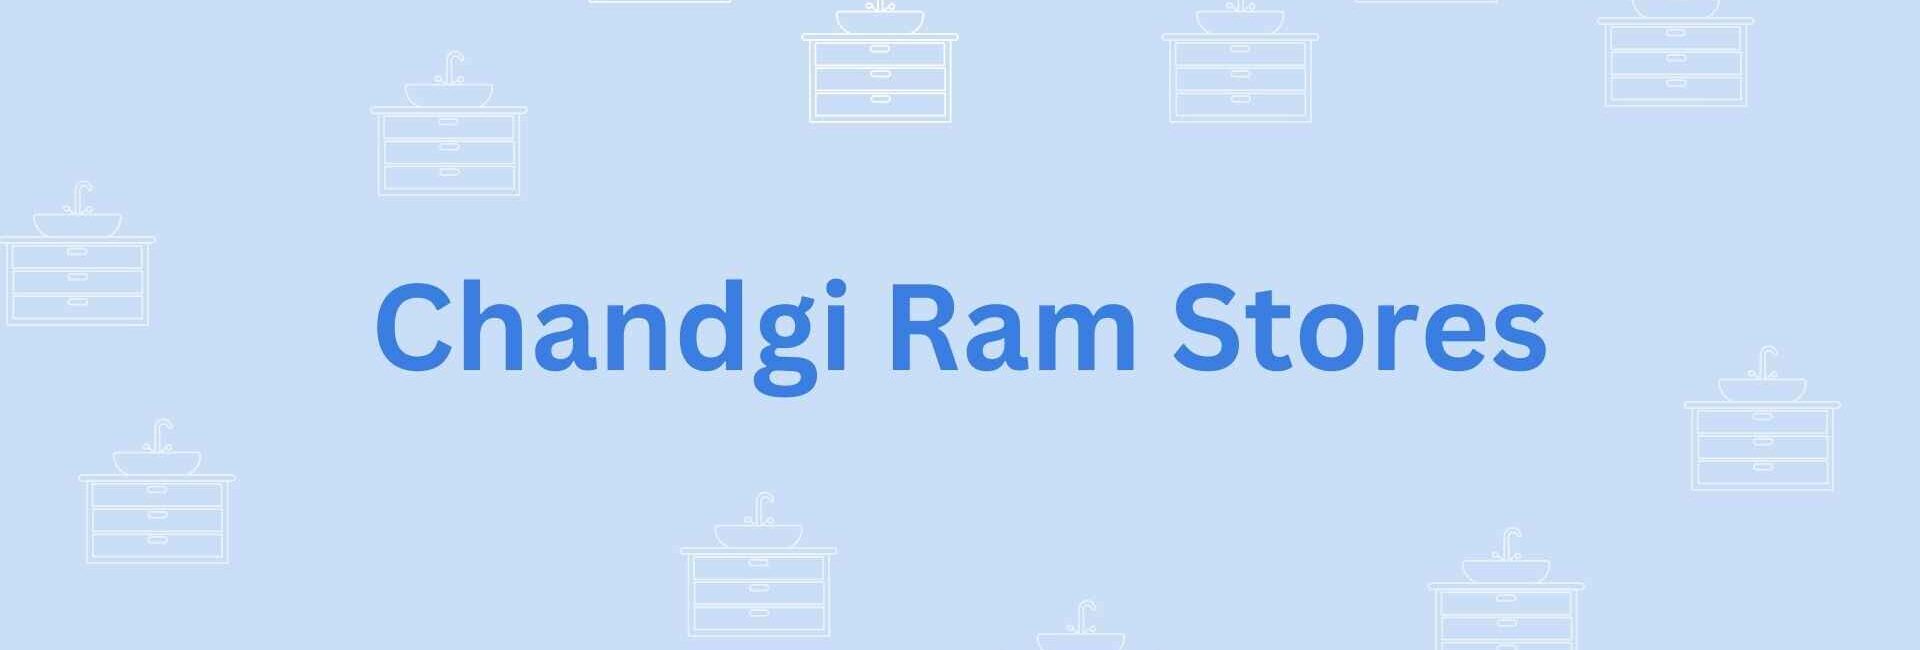 Chandgi Ram Stores- Sanitary drainage system in Noida